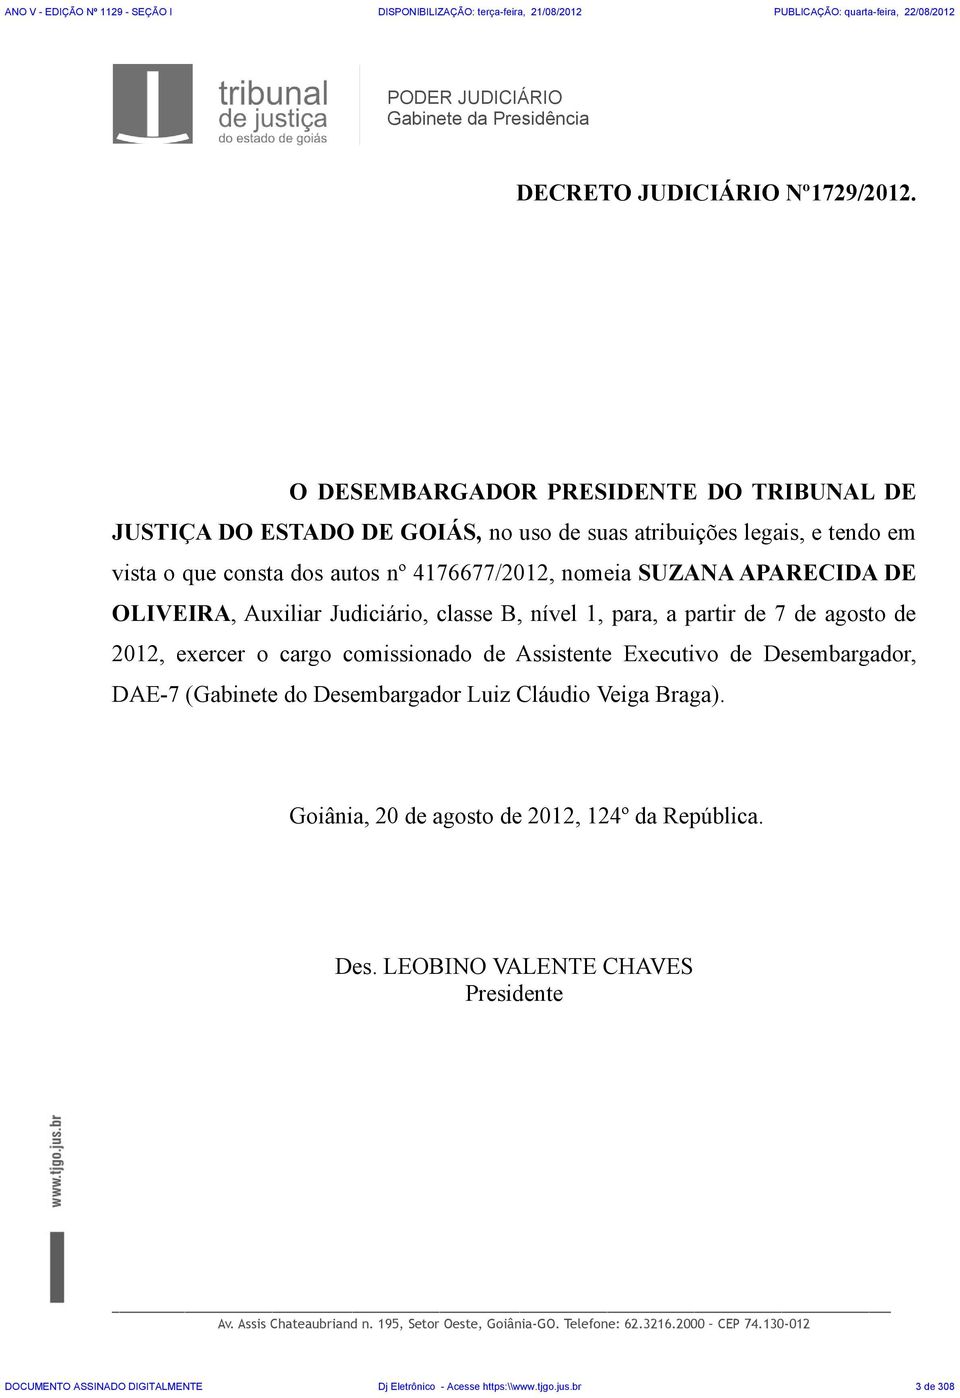 OLIVEIRA, Auxiliar Judiciário, classe B, nível 1, para, a partir de 7 de agosto de 2012, exercer o cargo comissionado de Assistente Executivo de Desembargador, DAE-7 (Gabinete do